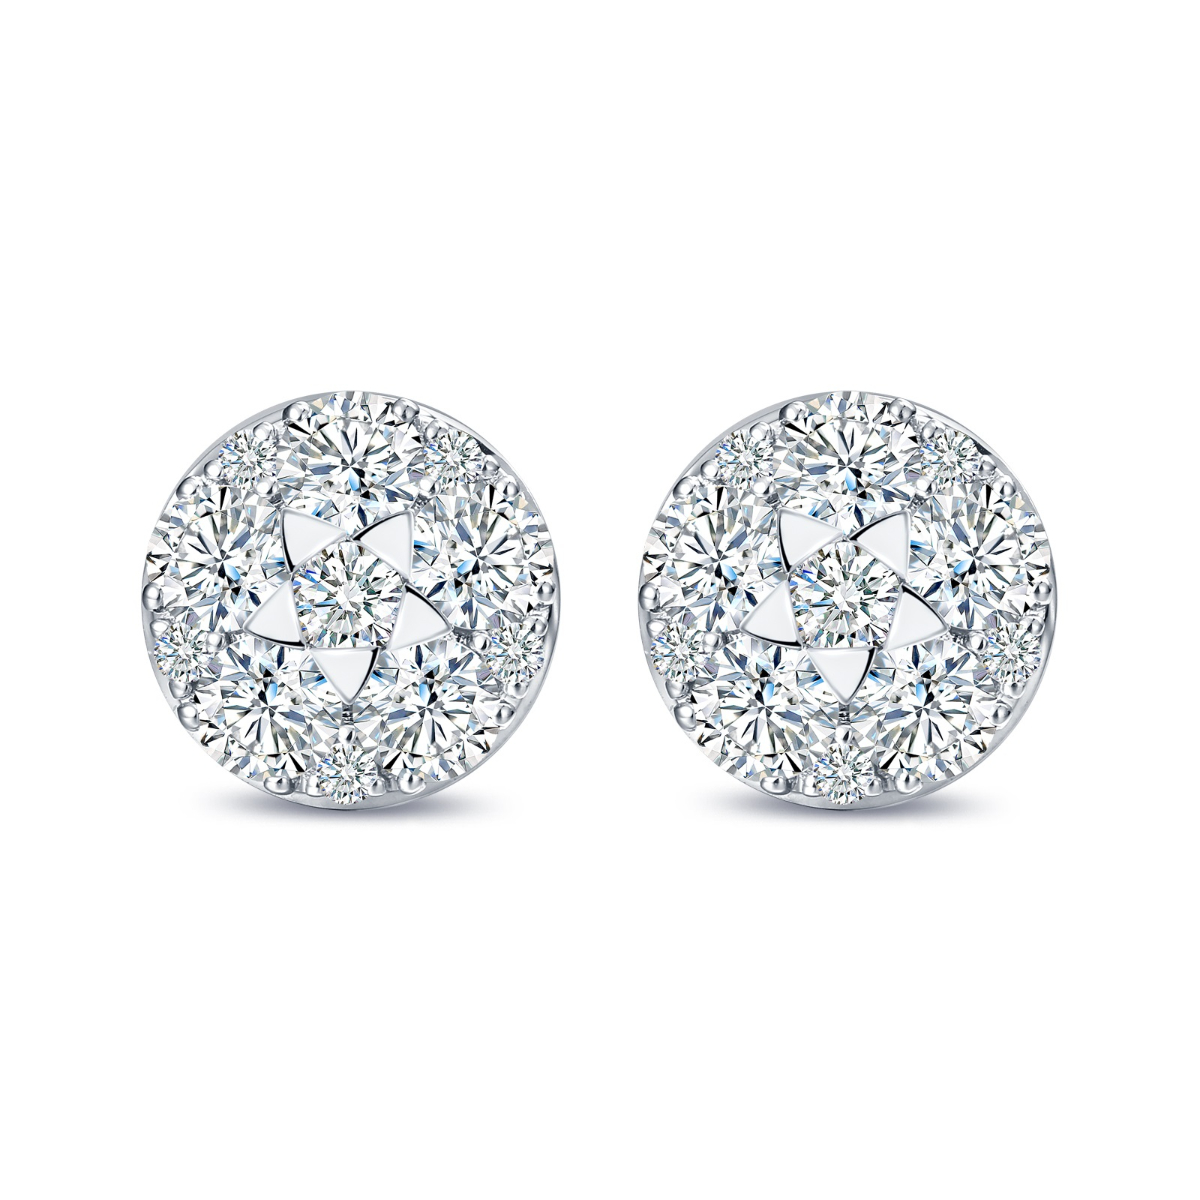 E35570WHT – 18K White Gold Diamond Earring, 1.33 TCW